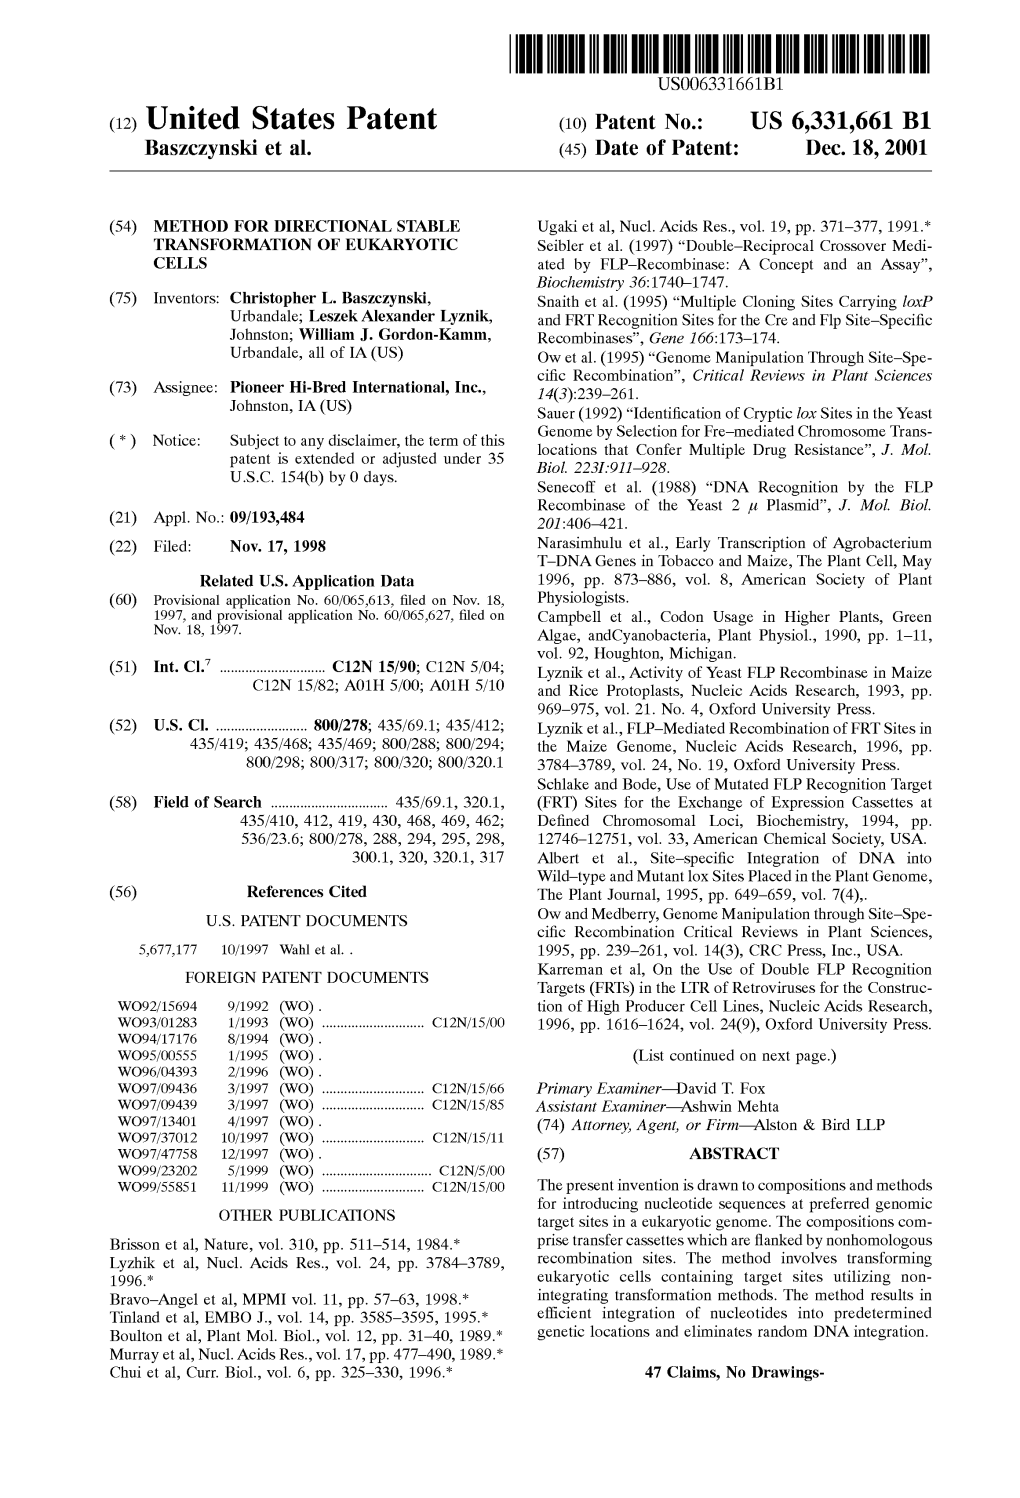 (12) United States Patent (10) Patent No.: US 6,331,661 B1 Baszczynski Et Al